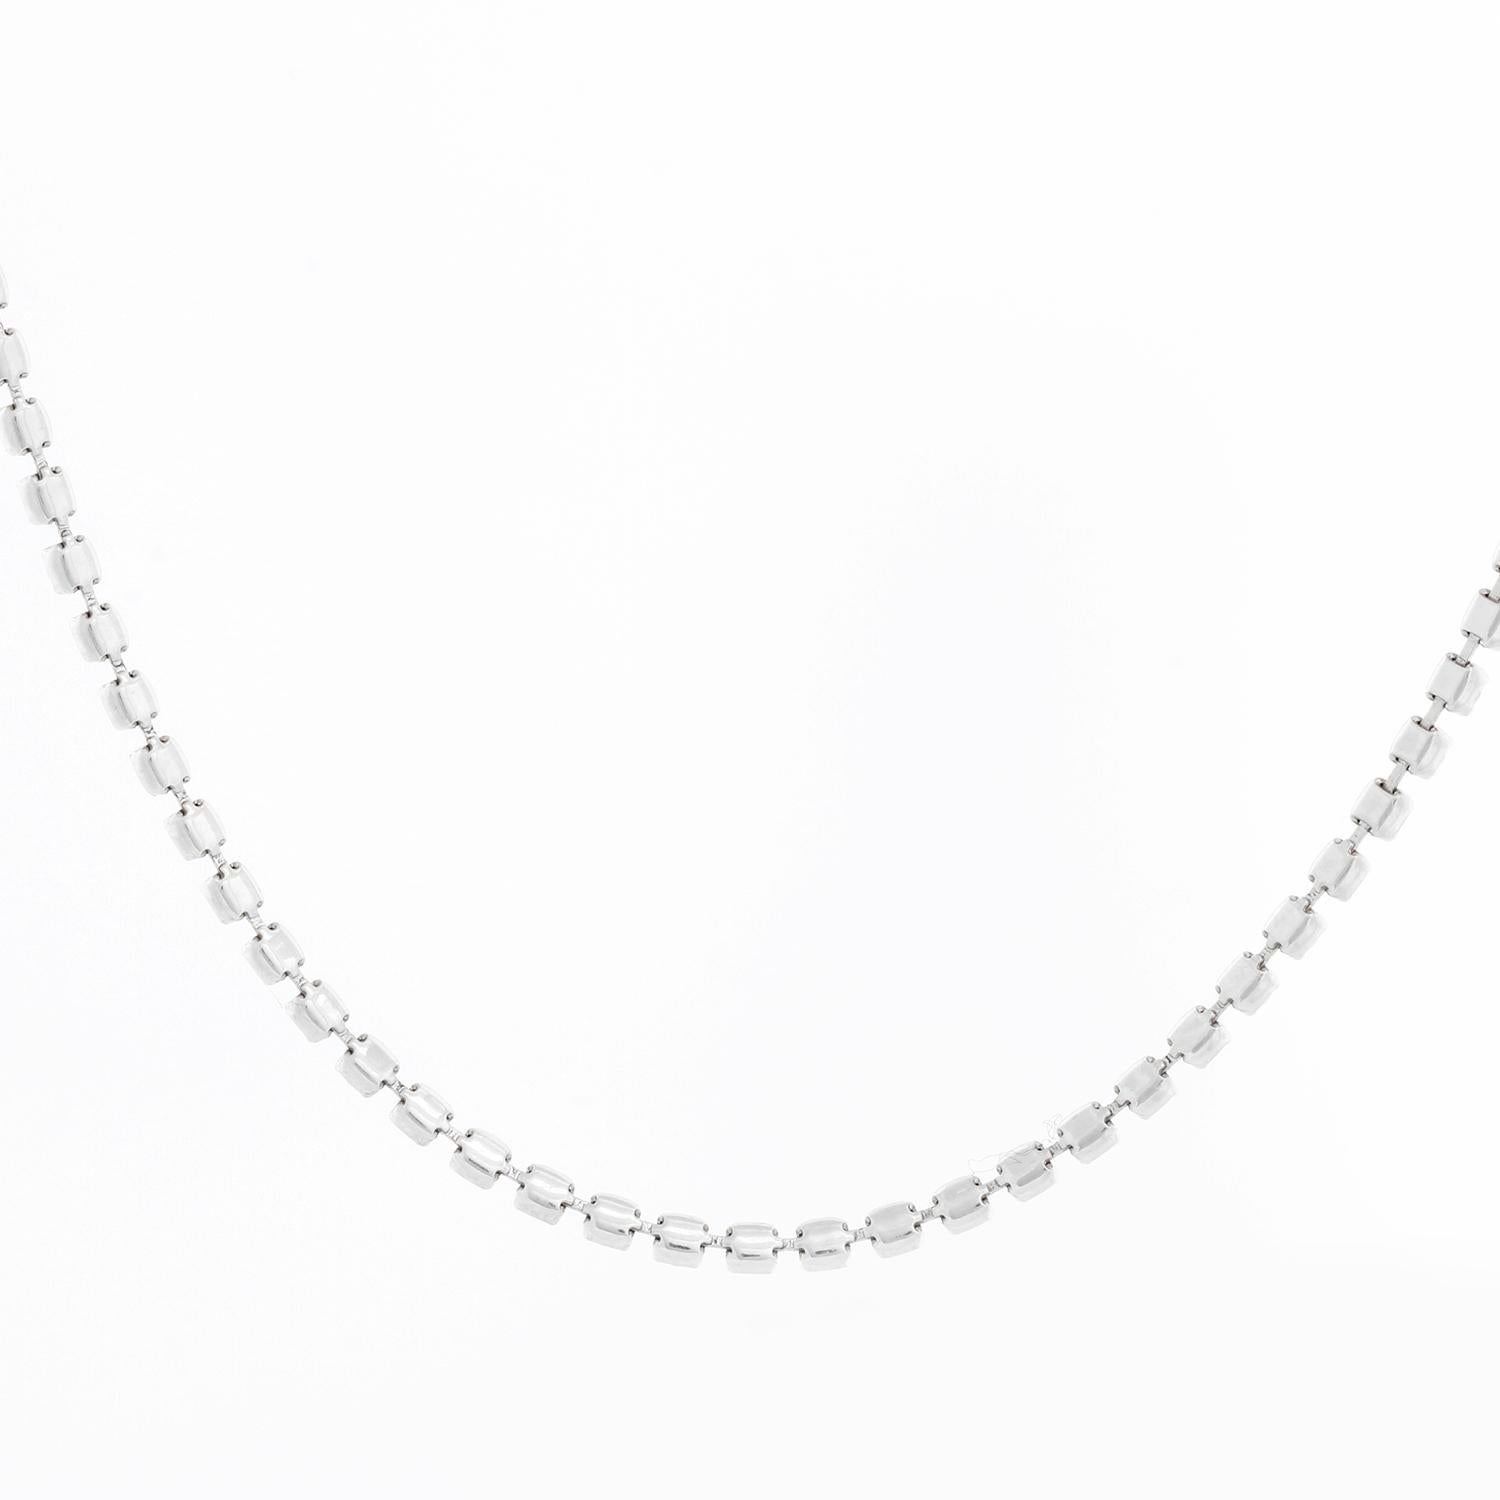 Platinum Tennis Necklace 5.33 carats For Sale 2